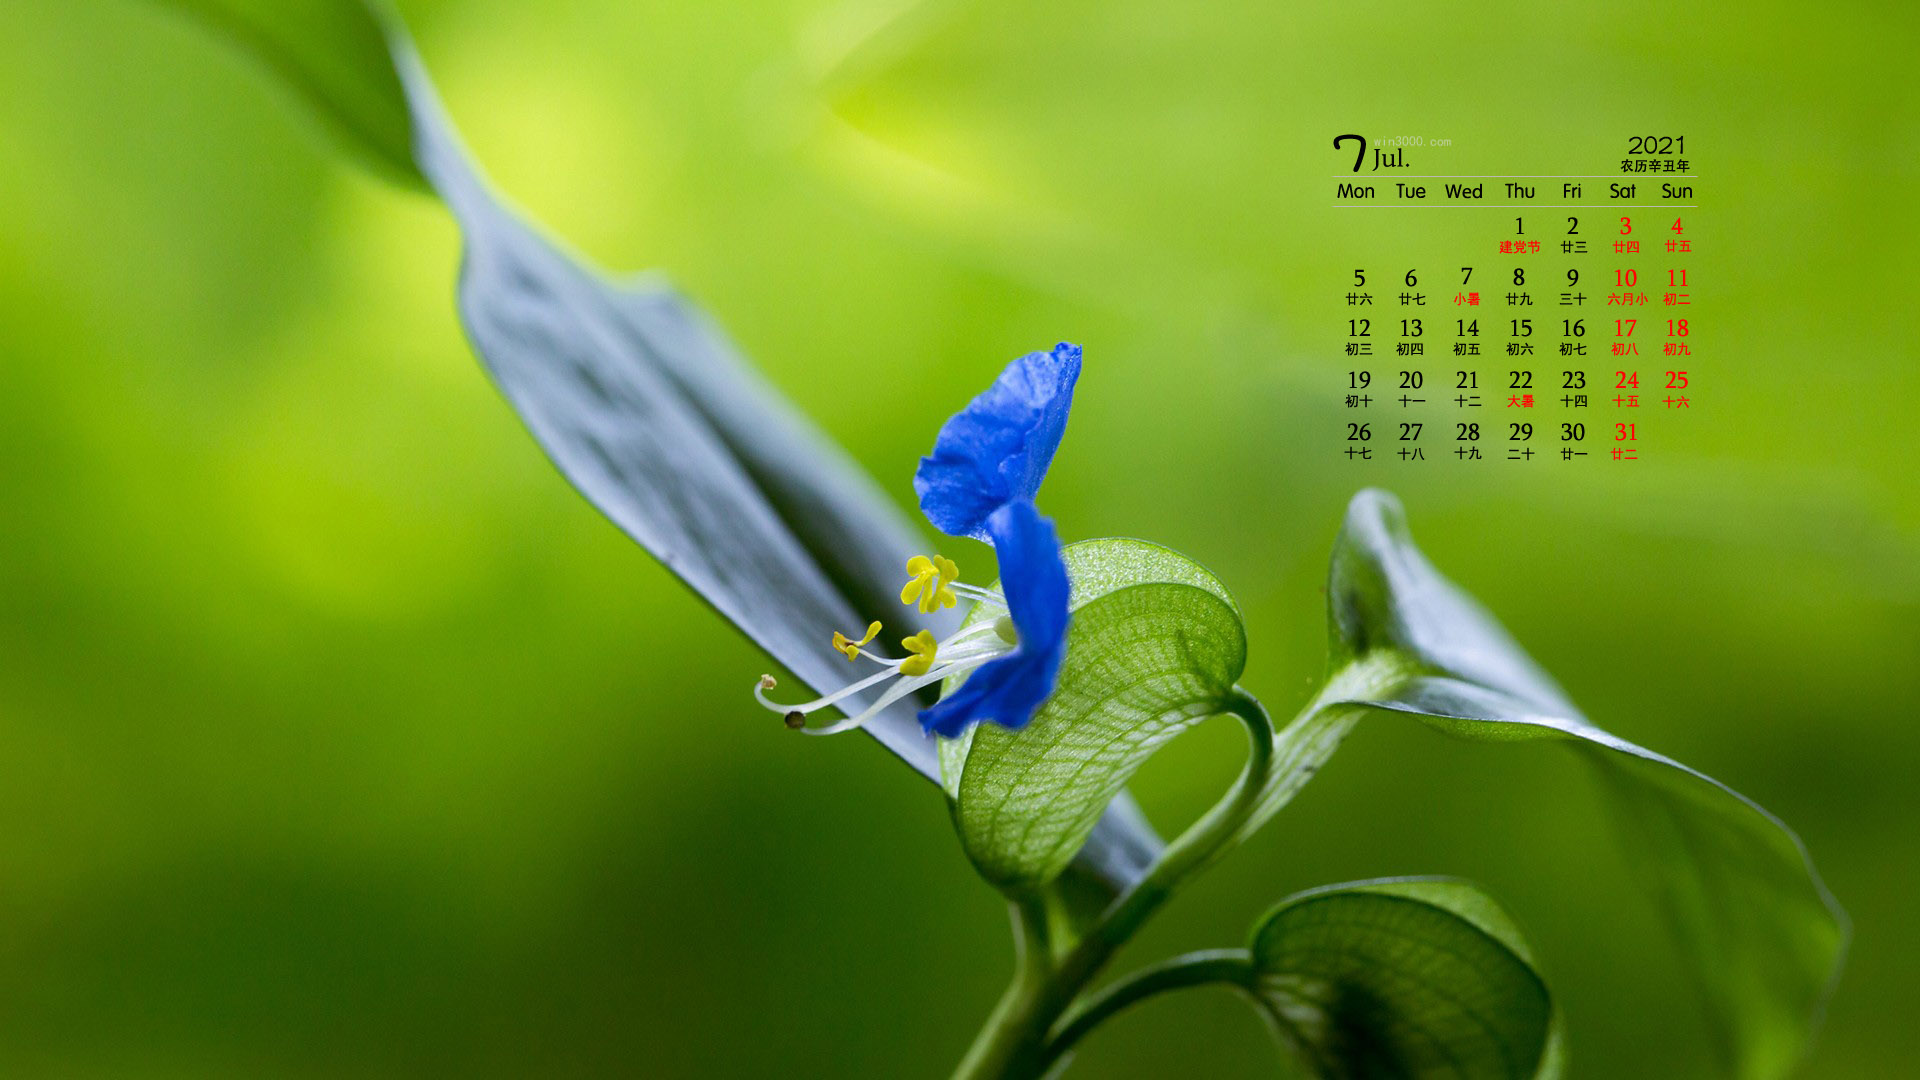 2021年7月清新淡雅的花朵桌面日历壁纸